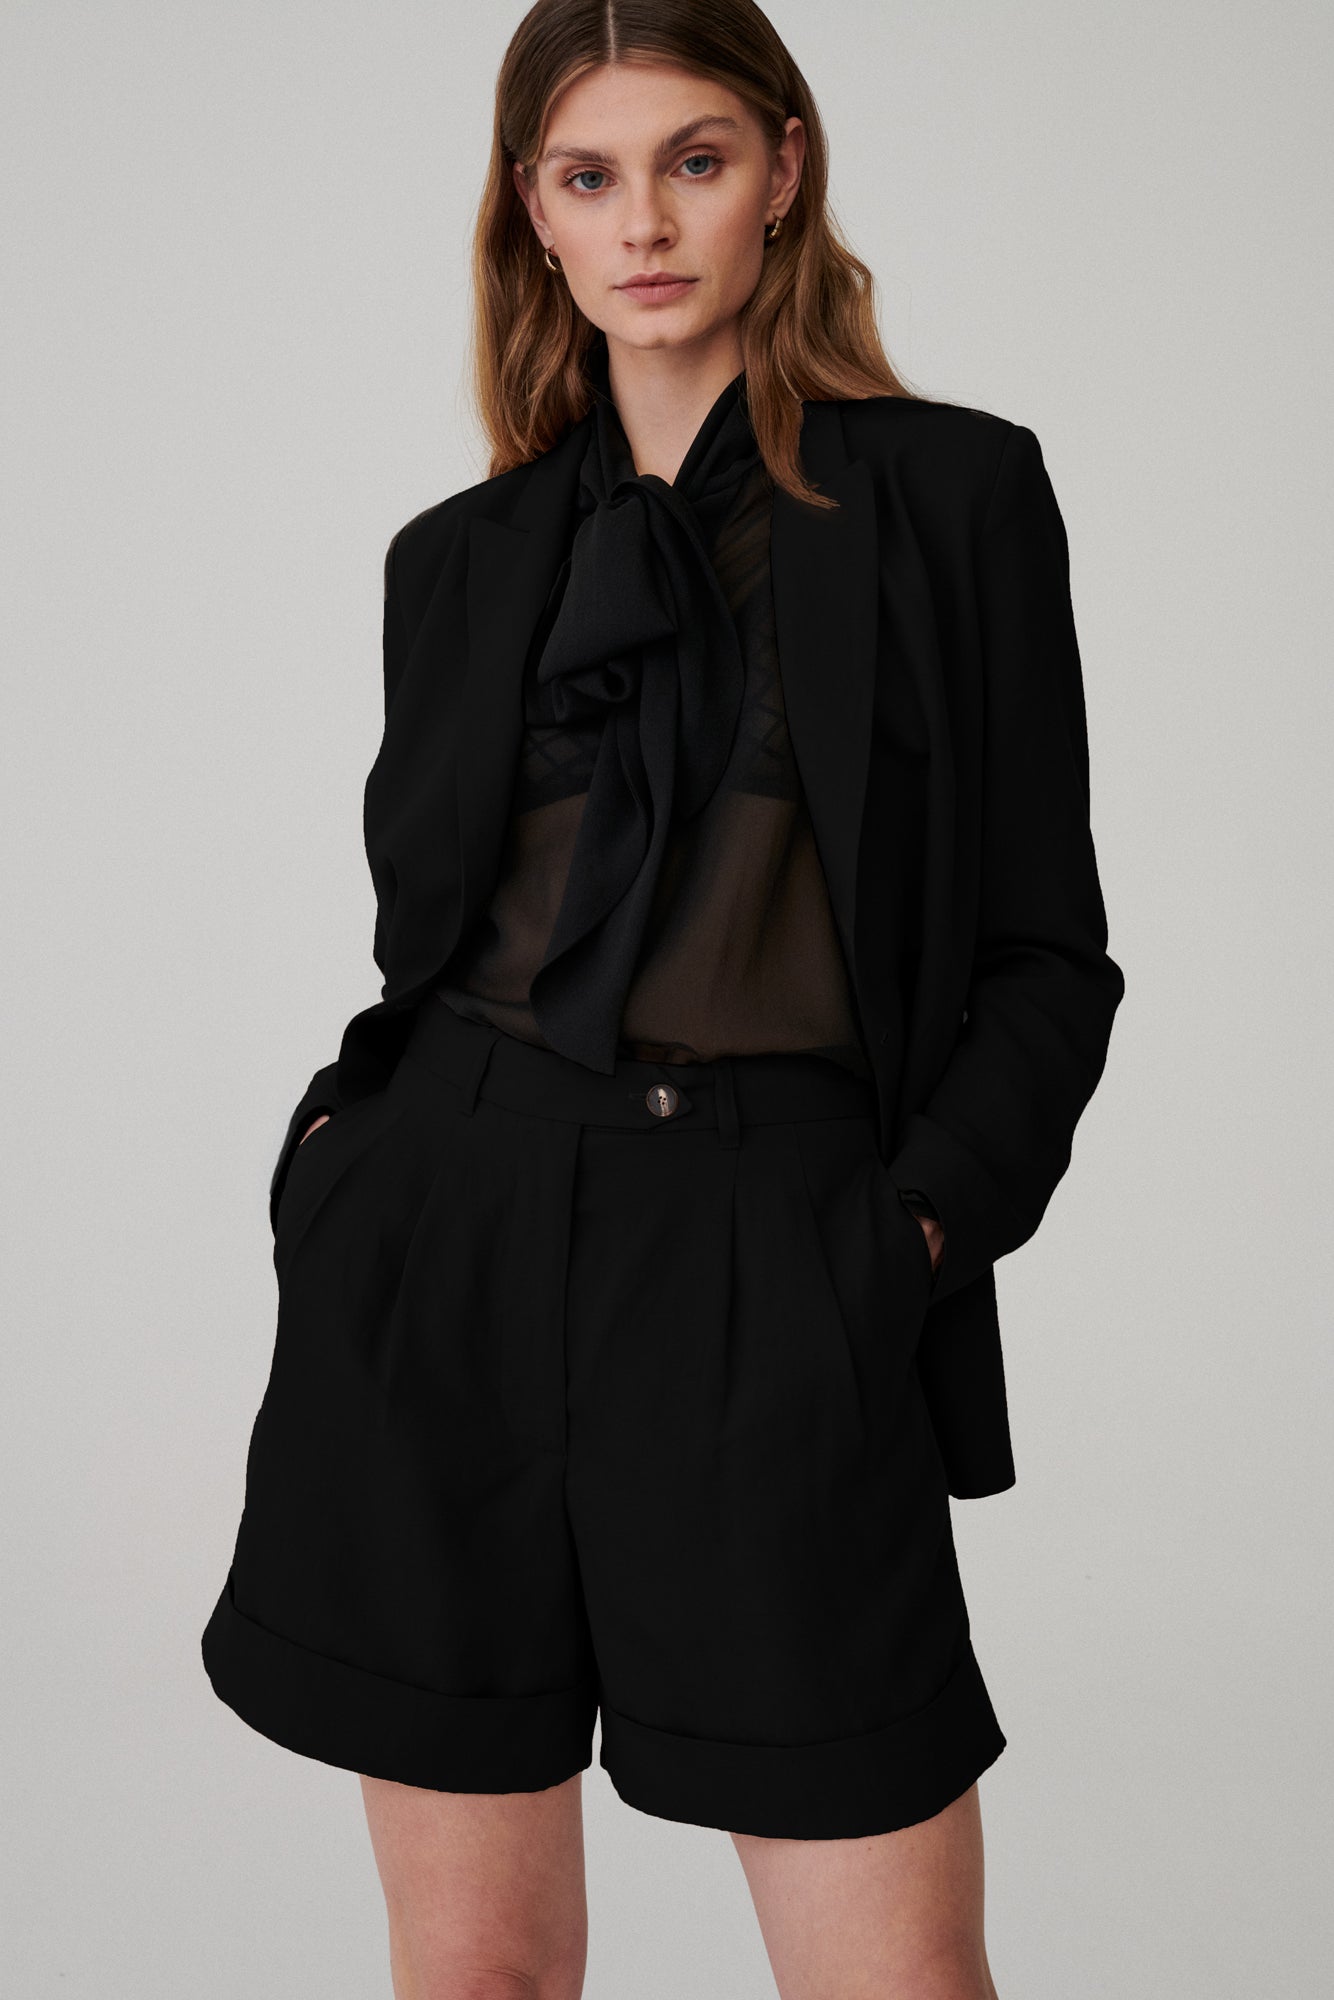 Blazer jacket in Tencel™ & linen / 18 / 07 / onyx black